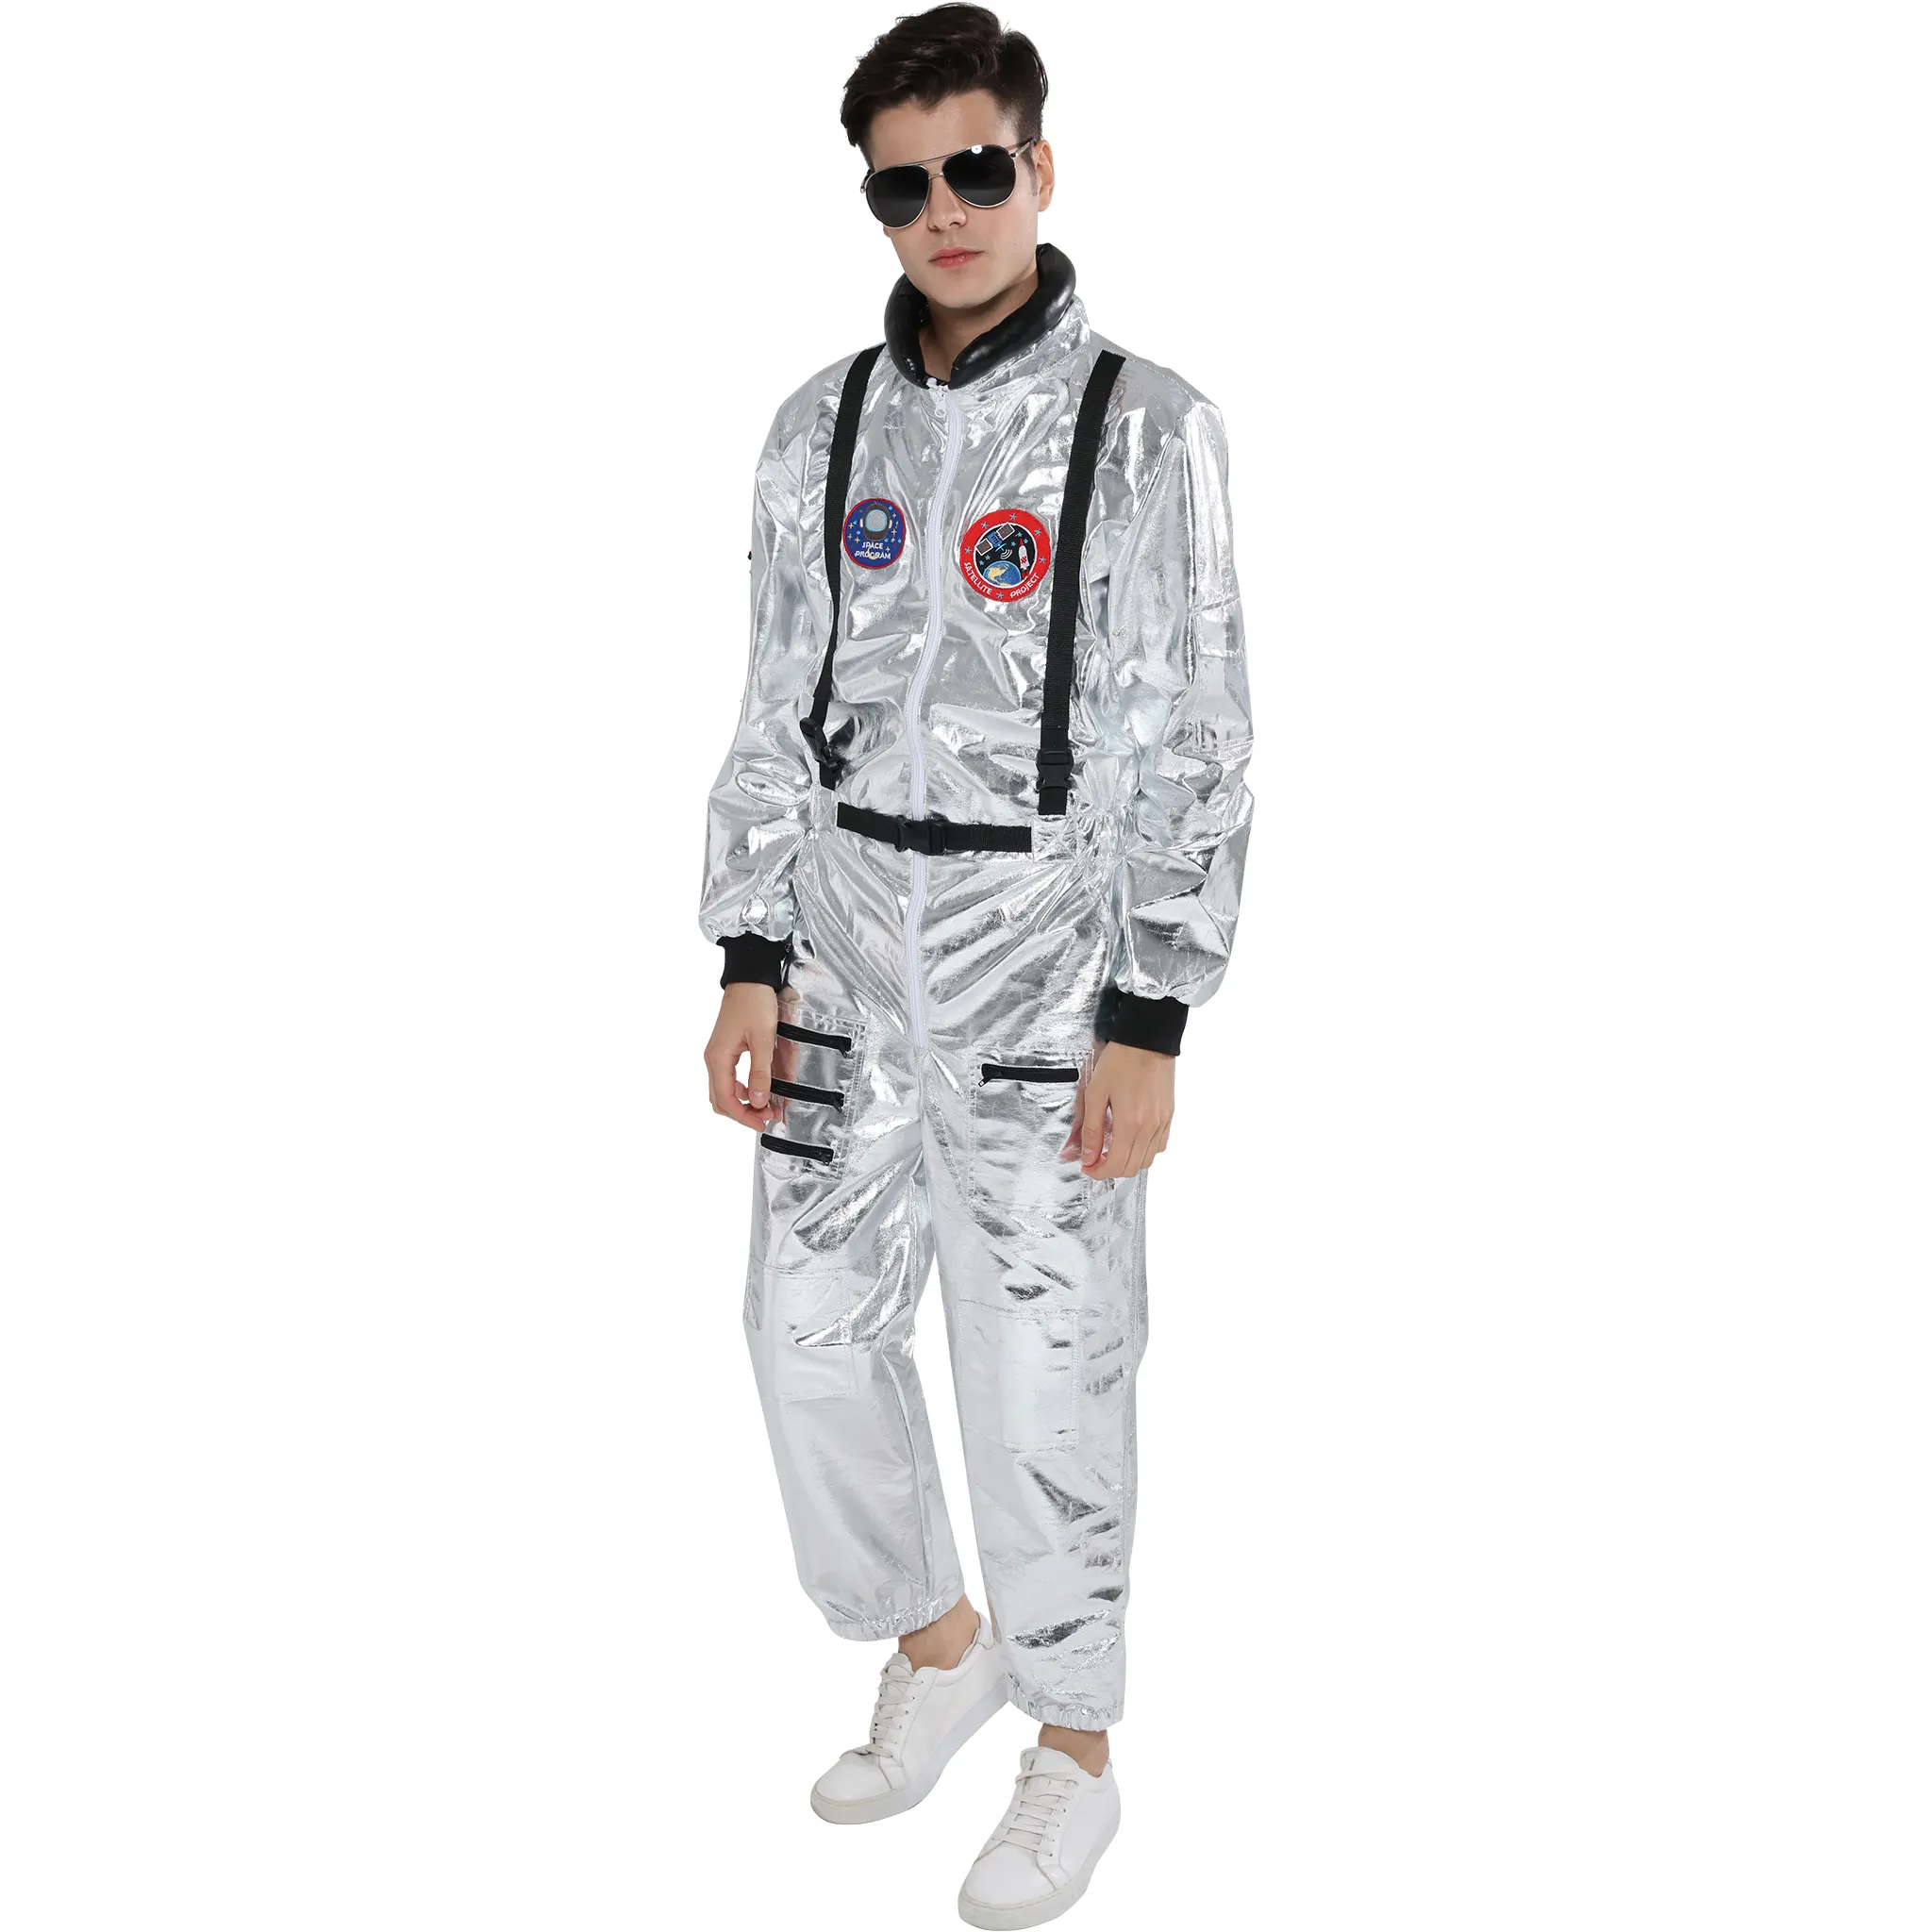 Amazon Top Seller Splitter Jumps uit Raumfahrer Cosplay Halloween Kostüm Männer Kostüm Erwachsene Astronauten Kostüm